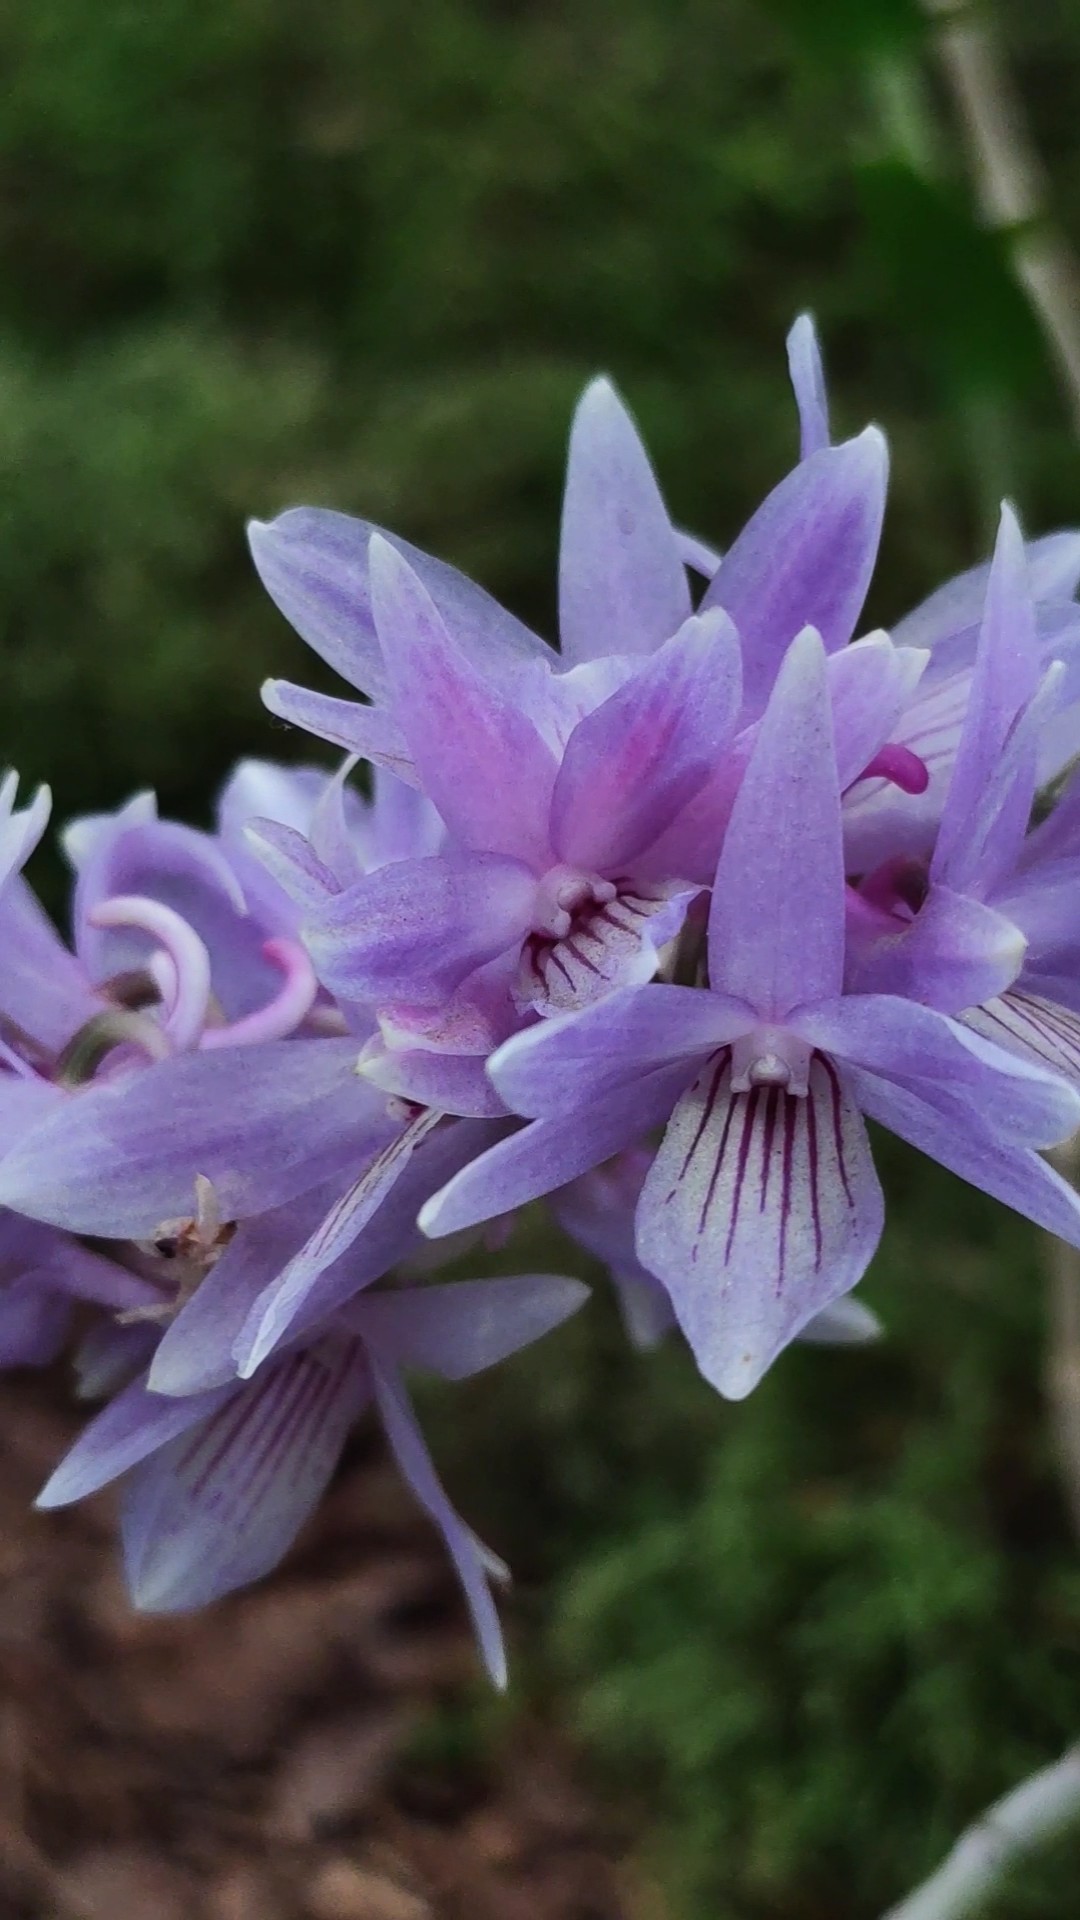 Dendrobium victoria reginae - taip, ta mėlyna spalva apsoliučiai tokia pat realybėje.